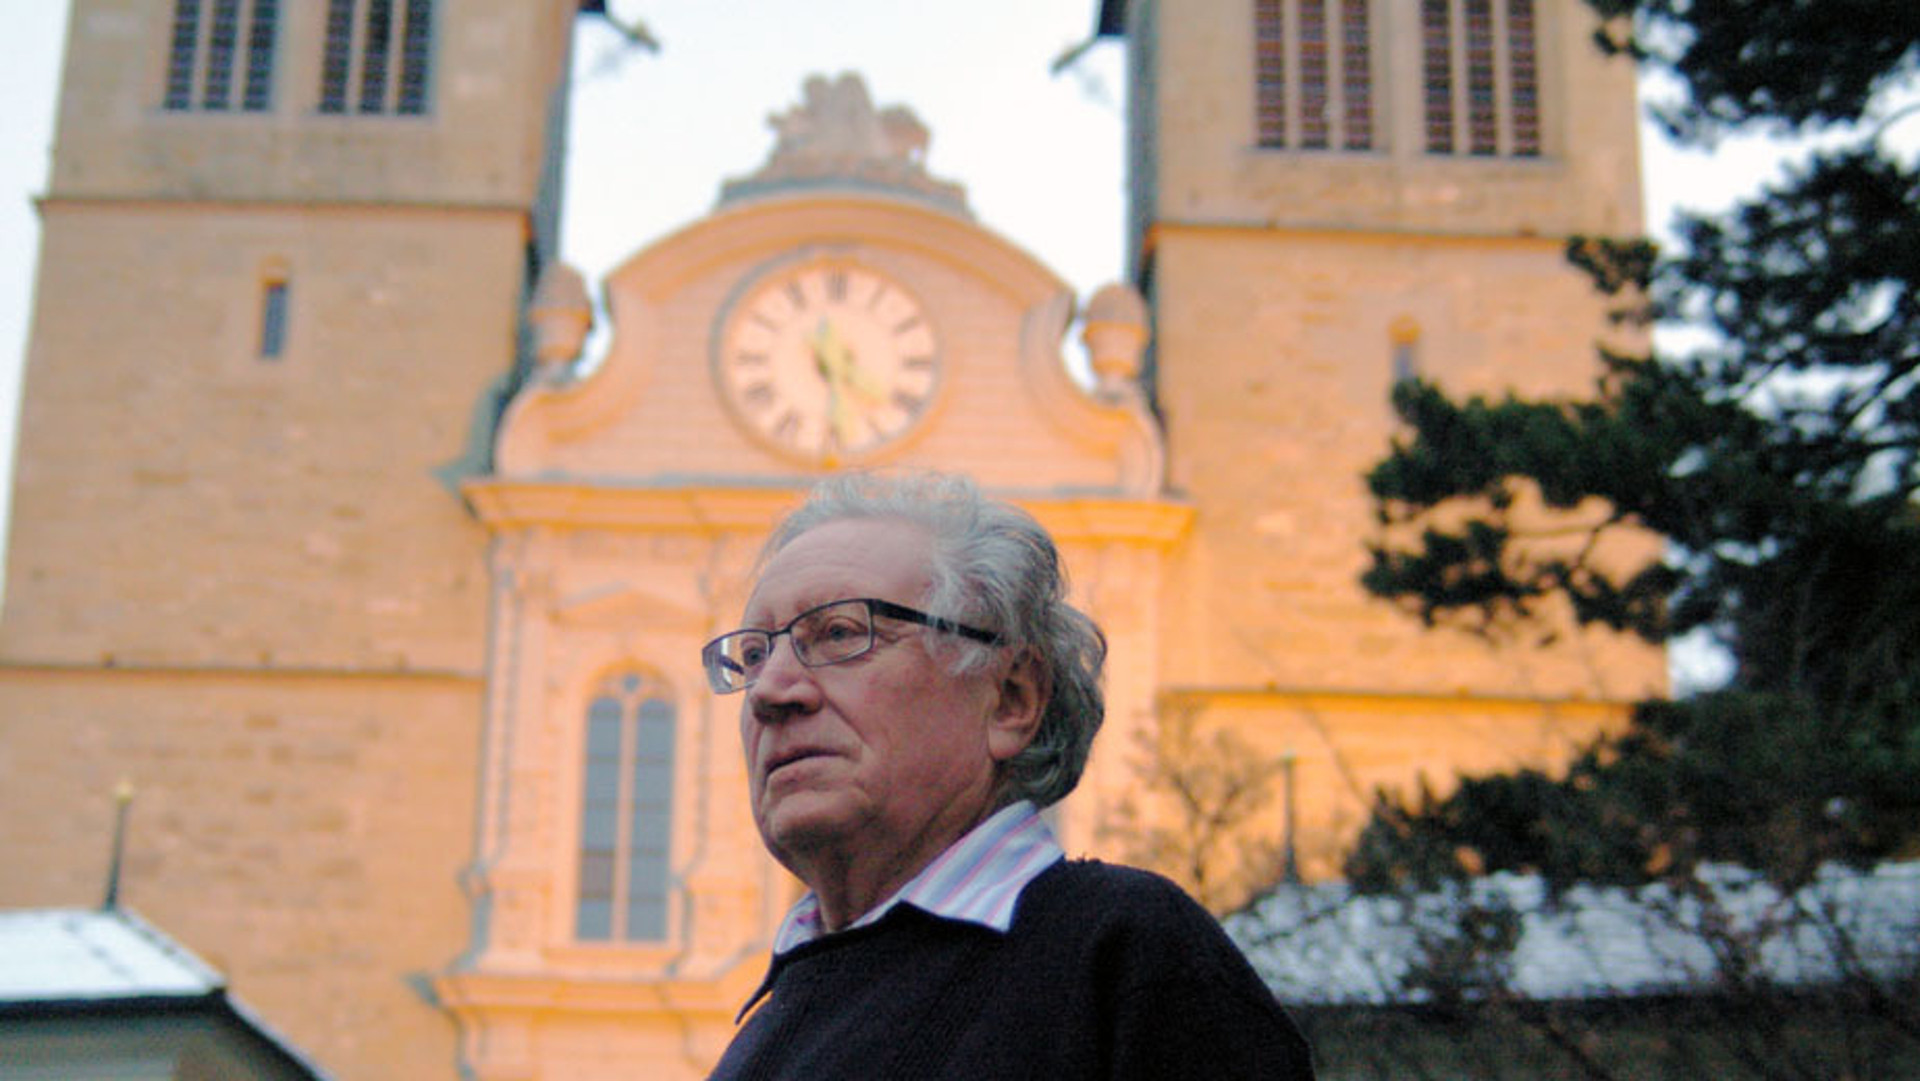 Le chanoine Max Hofer (1937-2015) ancien vicaire épiscopal du diocèse de Bâle (photo Georges Scherrer kipa 2012)